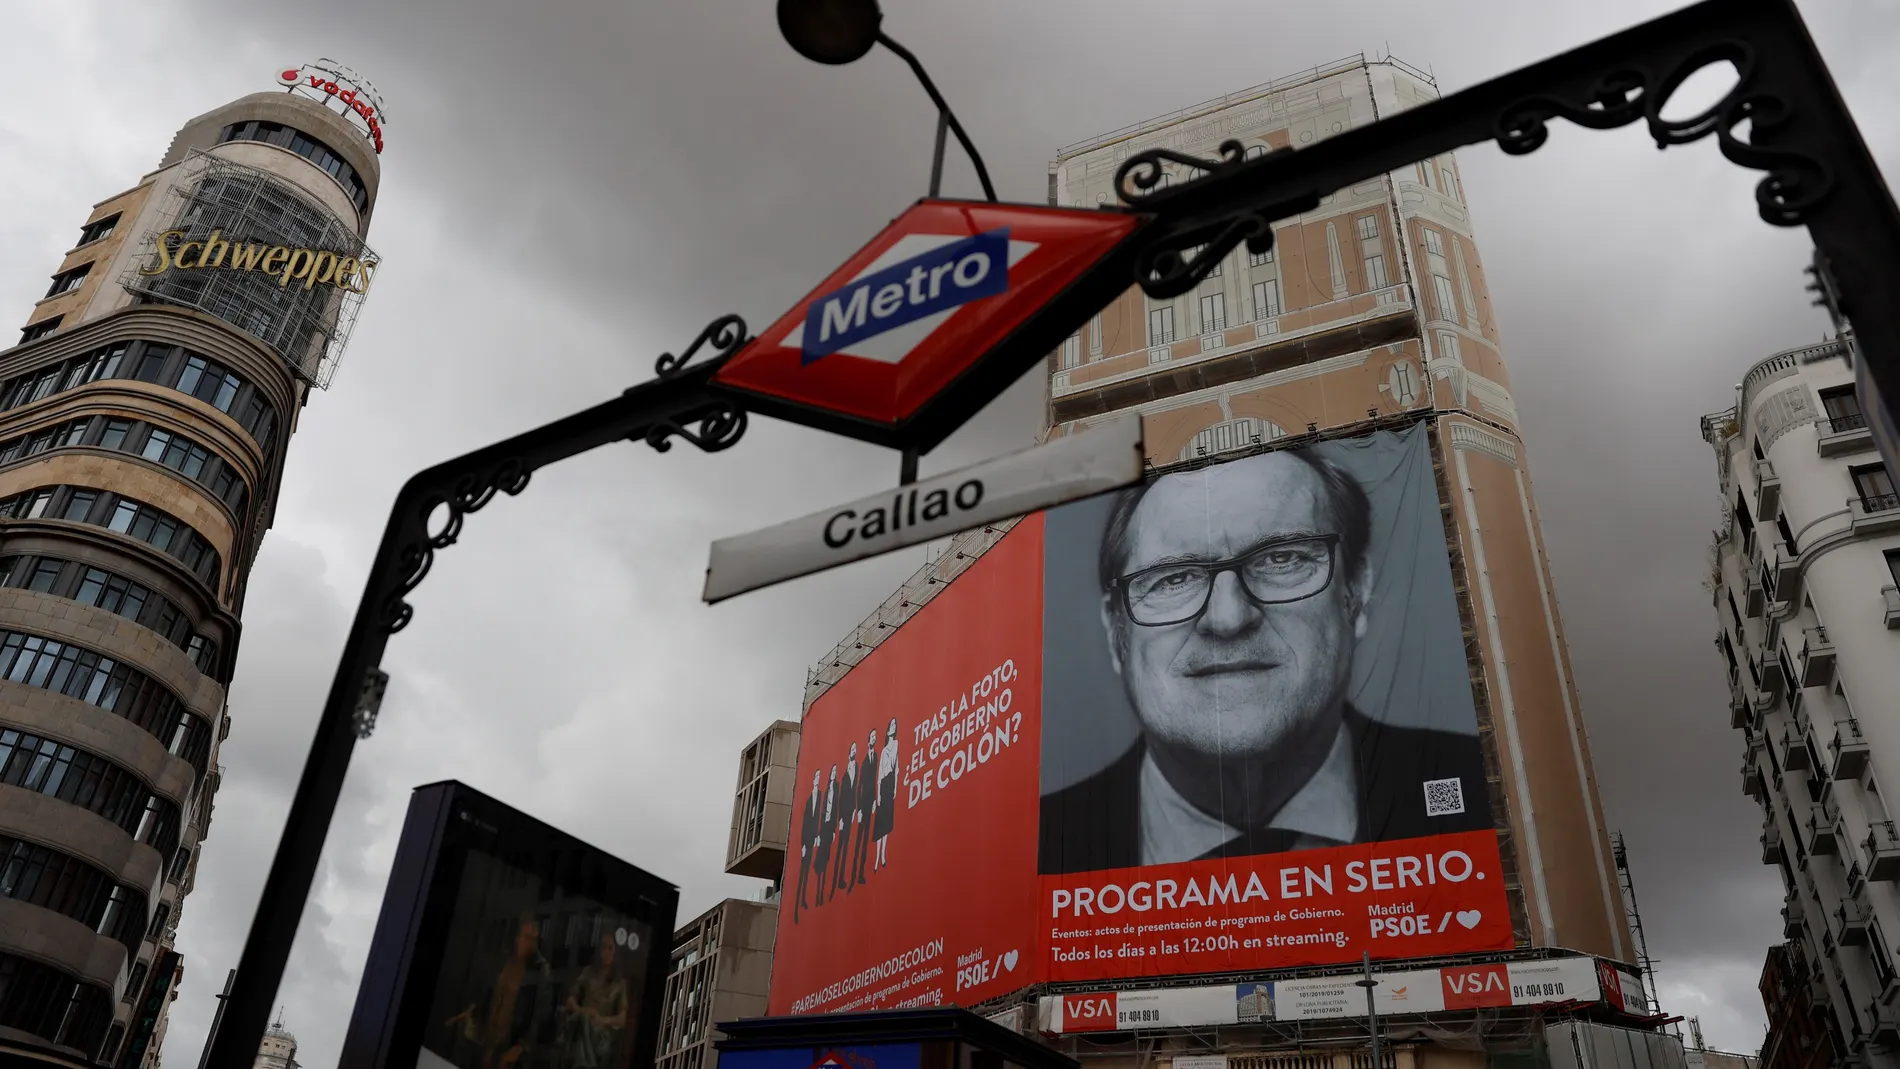 Un cartel electoral gigante del candidato del PSOE Ángel Gabilondo en la fachada de uno de los edificios de la madrileña plaza de Callao